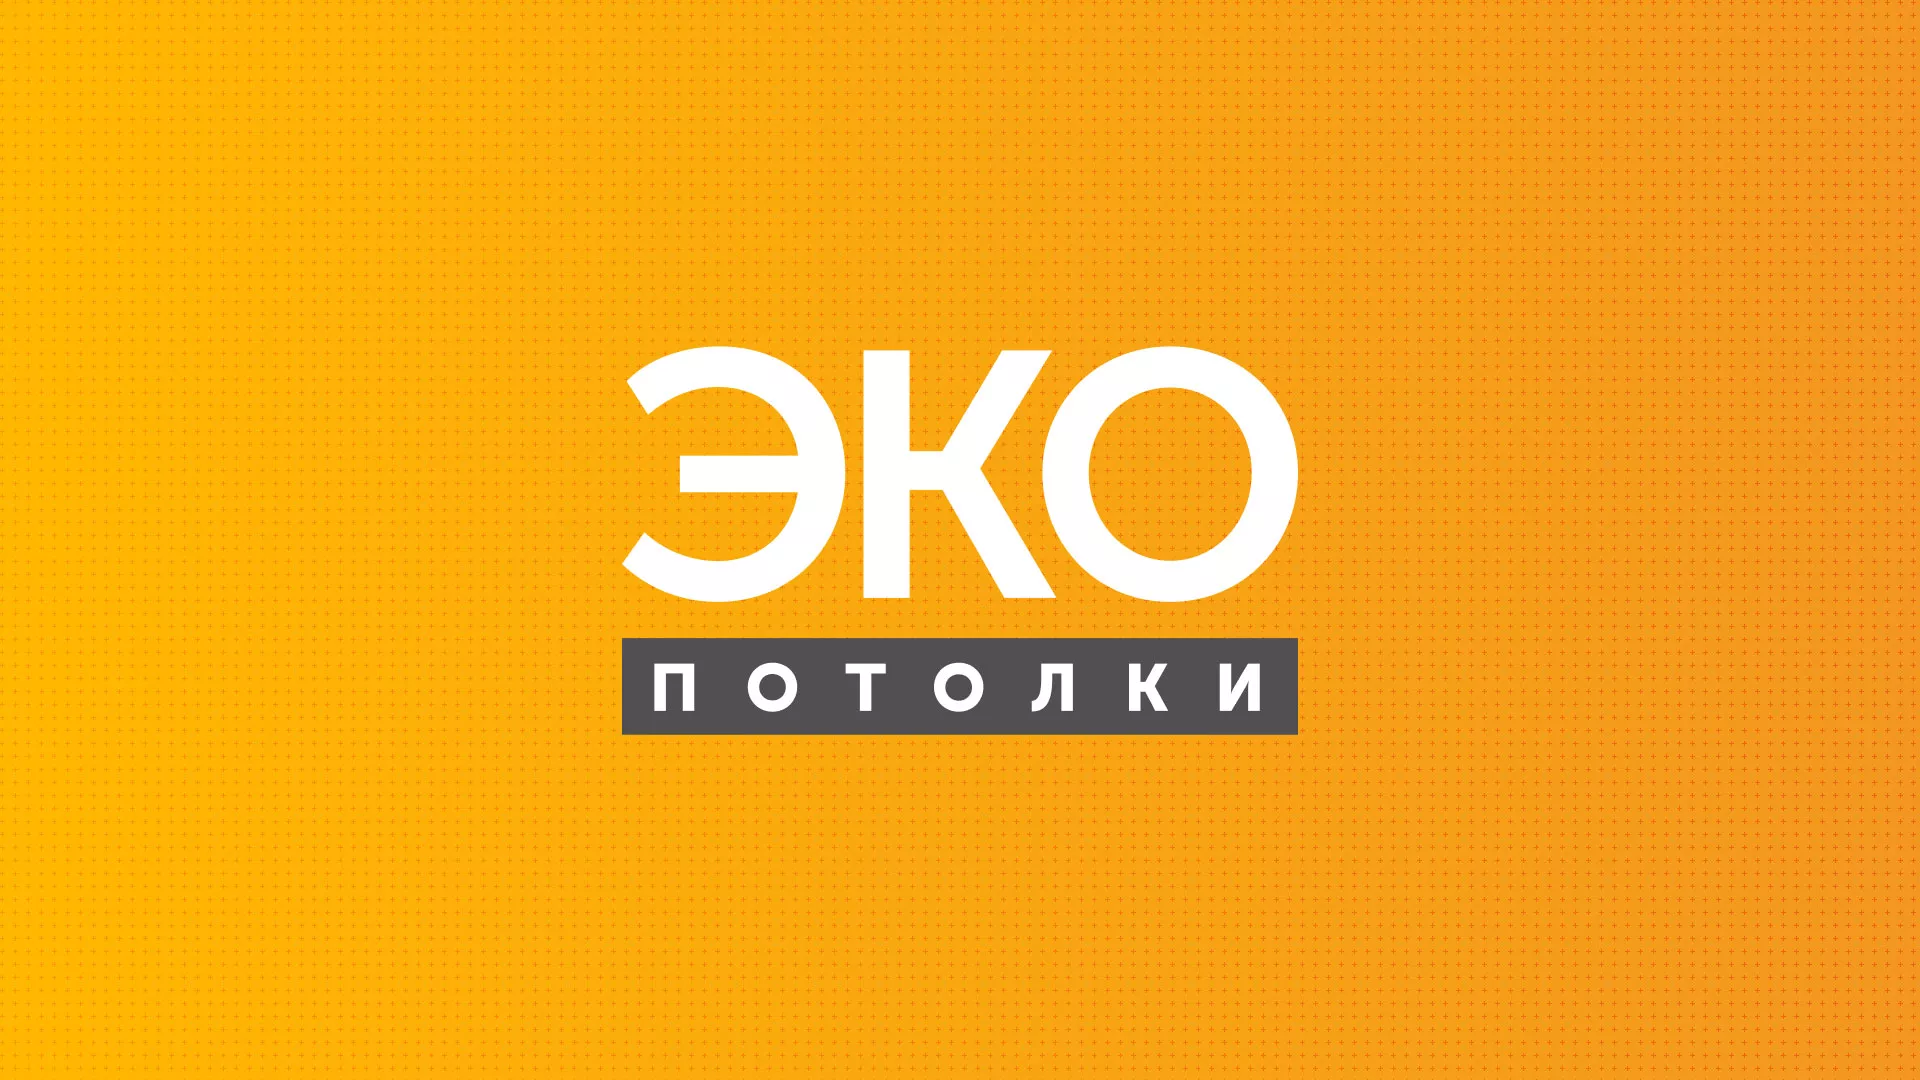 Разработка сайта по натяжным потолкам «Эко Потолки» в Лесозаводске